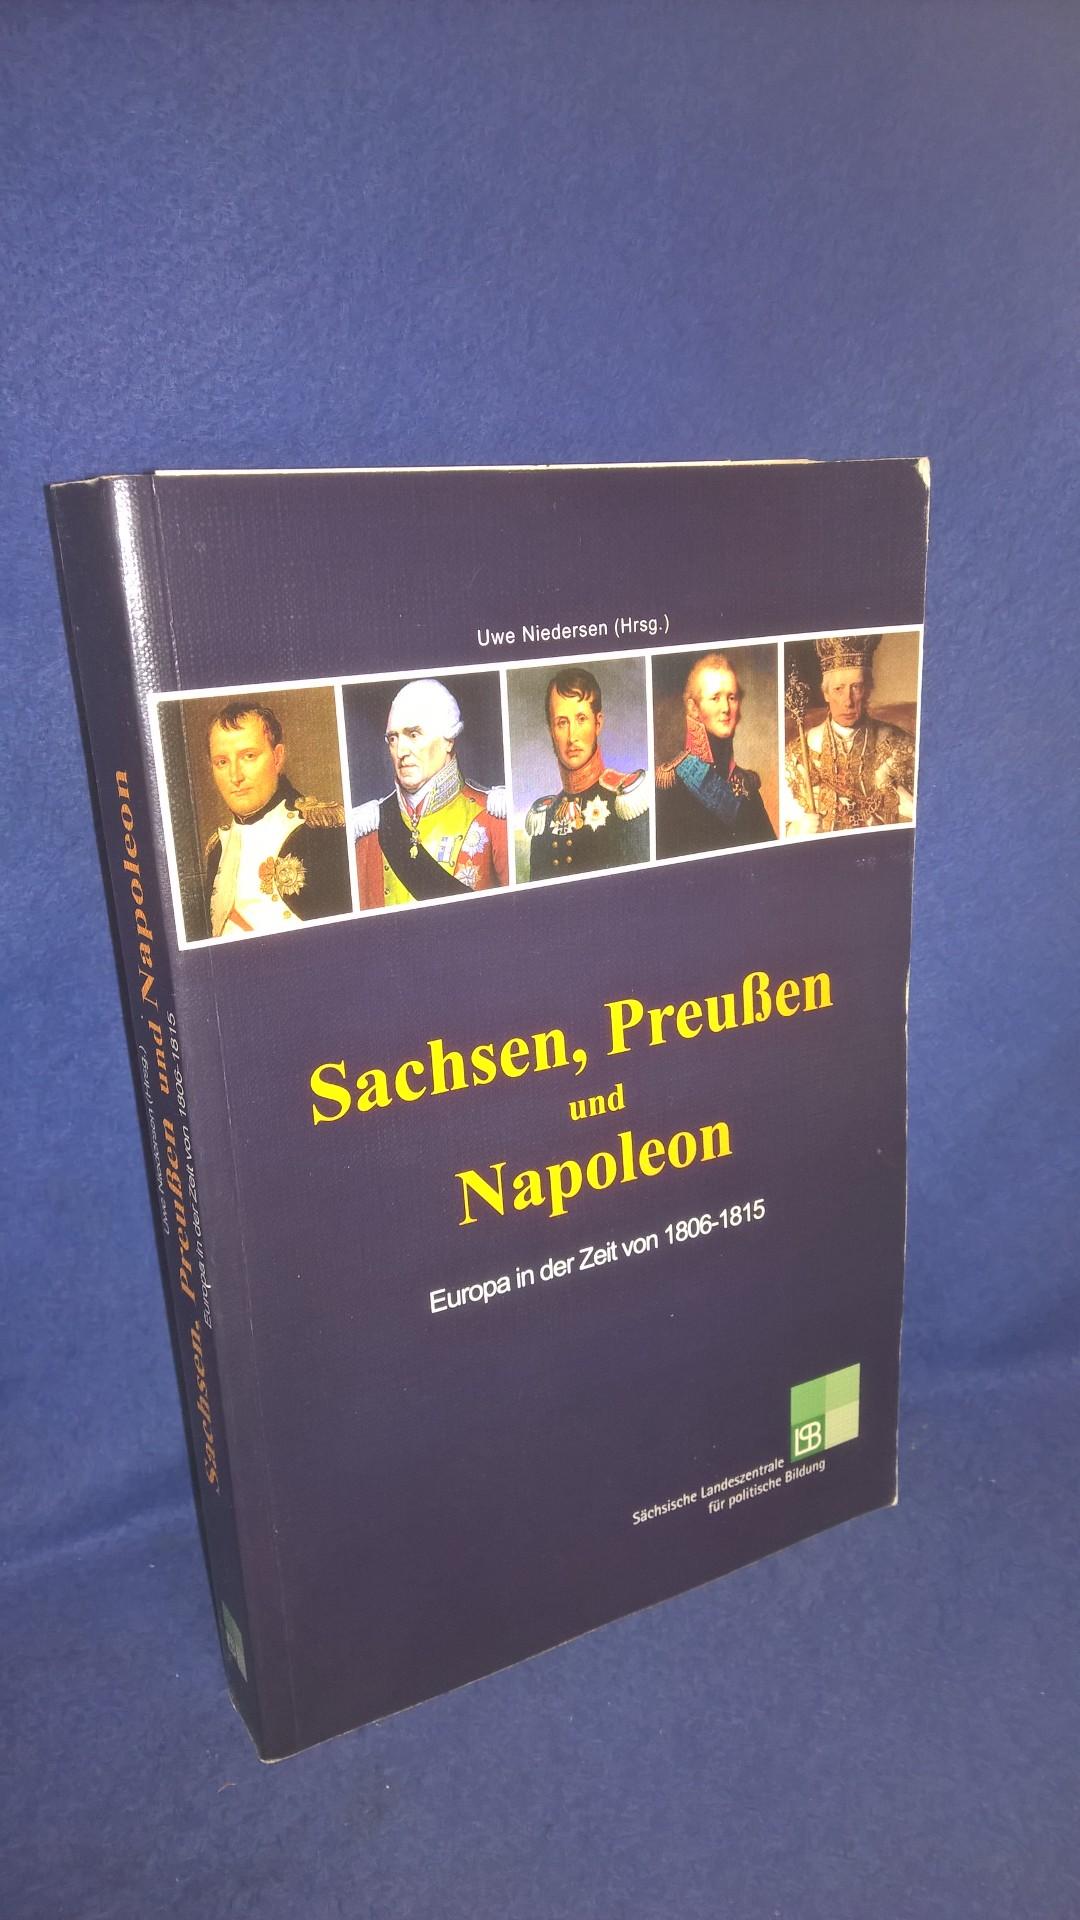 Sachsen, Preußen und Napoleon. Europa in der Zeit von 1806-1815.